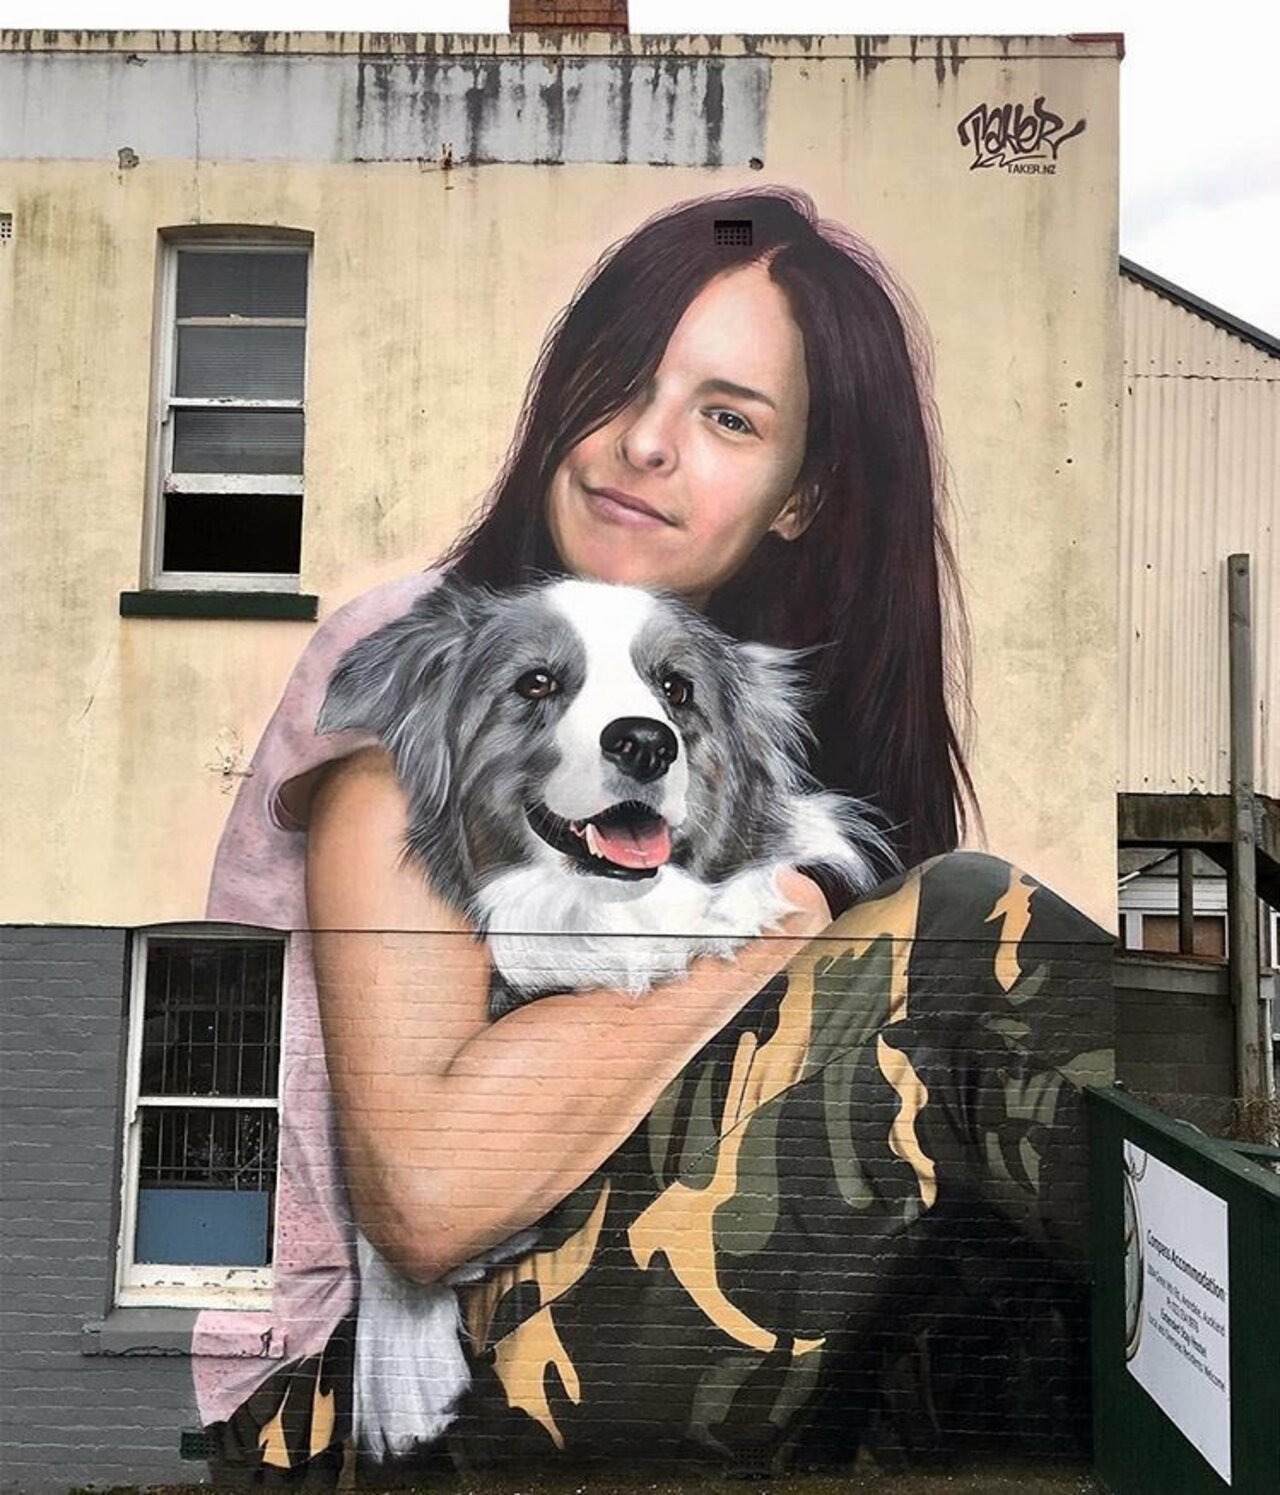 #mural by TakerOne #Auckland #NZ #art #graffiti #streetart https://t.co/bcem9viahZ